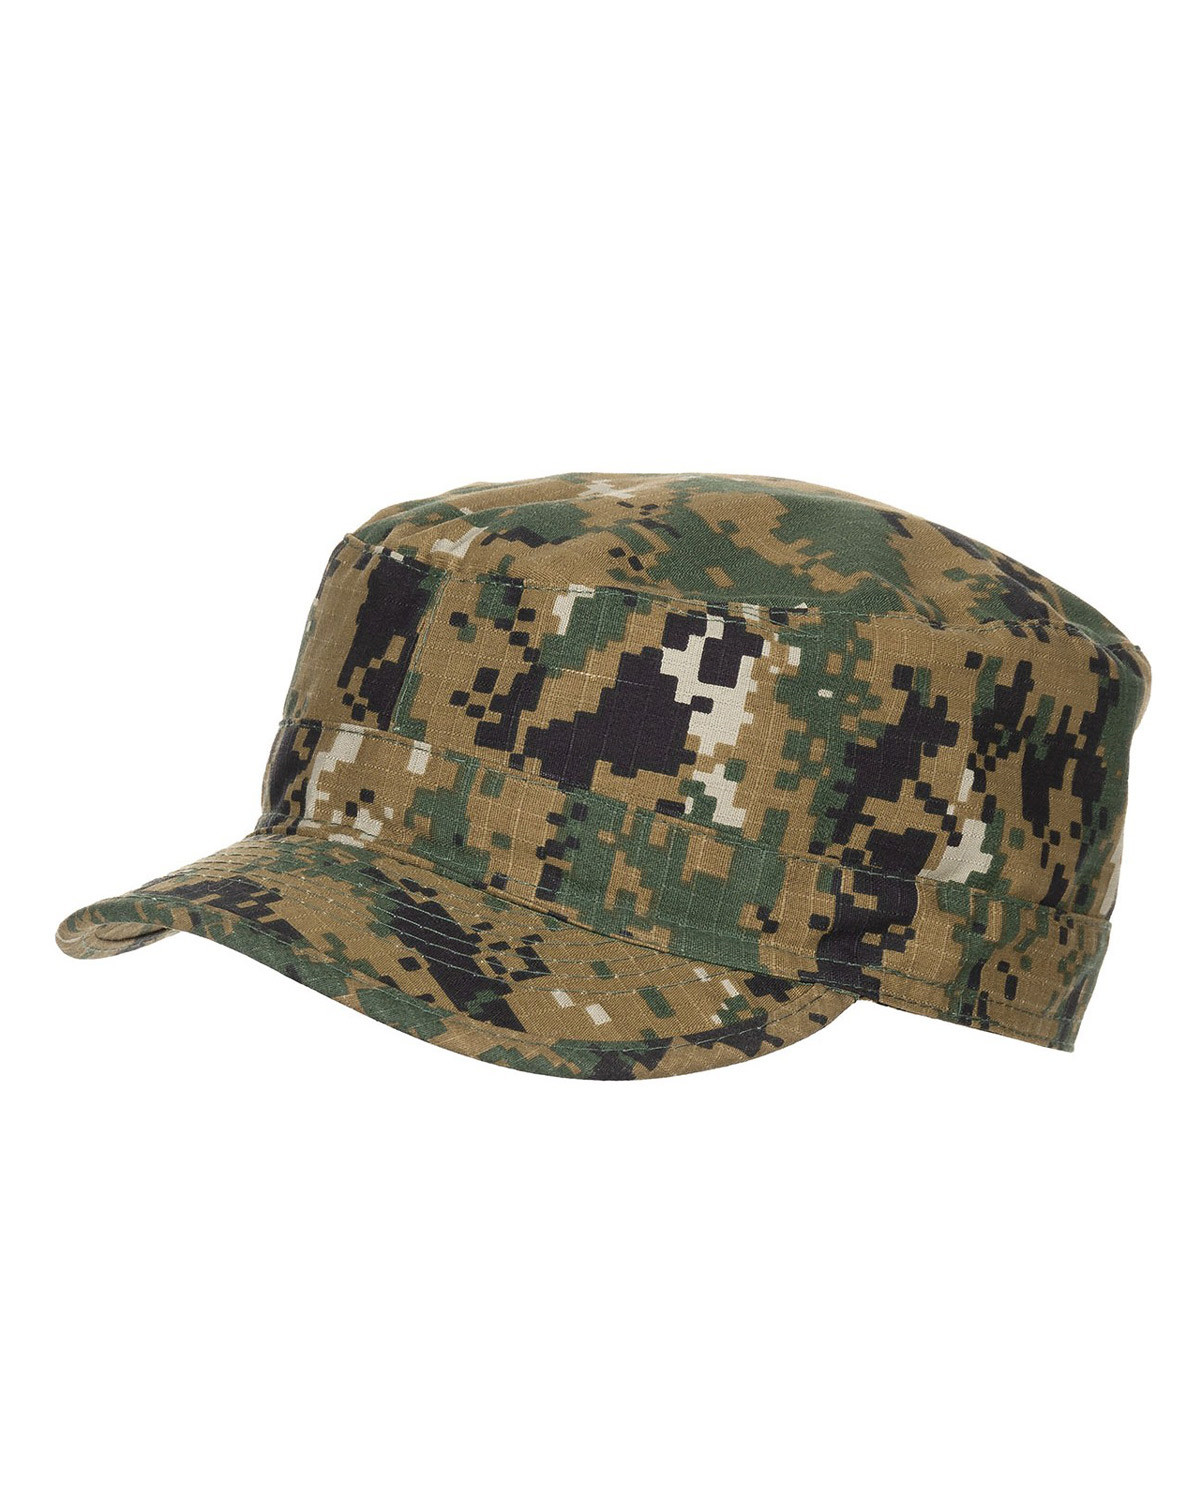 MFH U.S. Army Caps (Digital Woodland, XL)